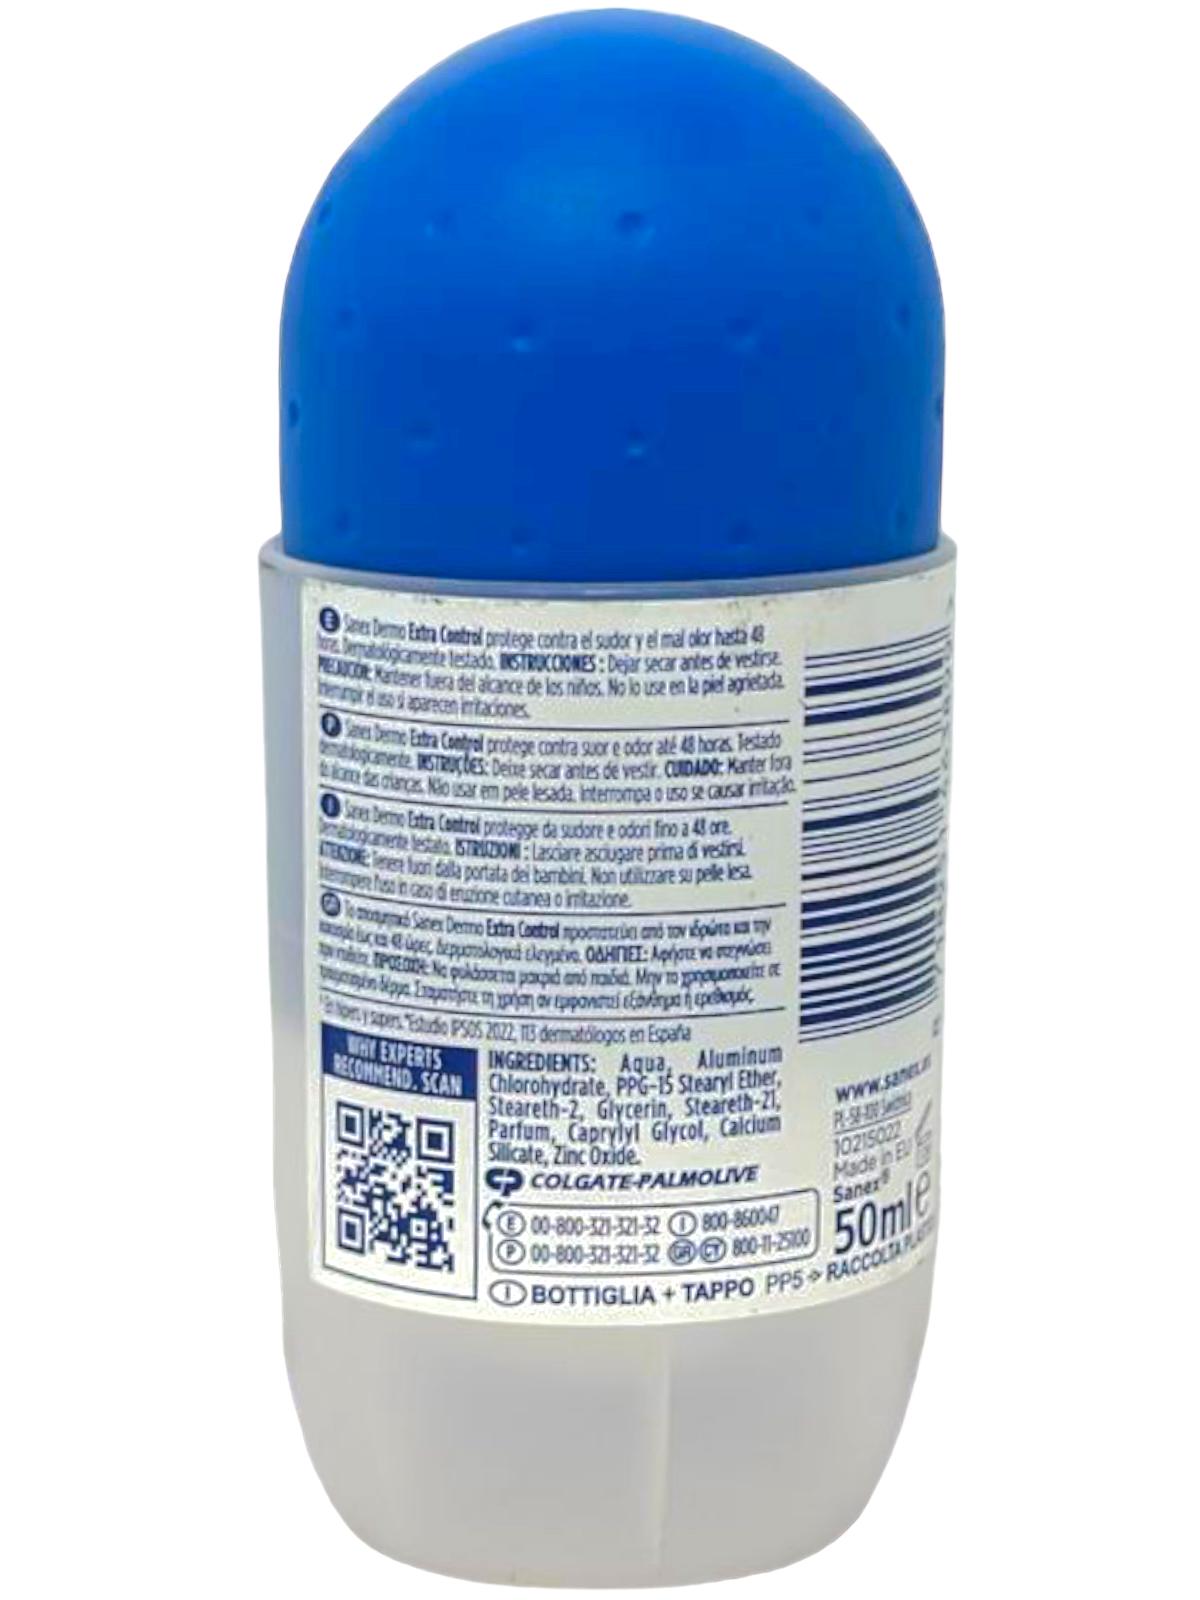 Sanex Dermo Extra Control Roll On Deodorant 50ml